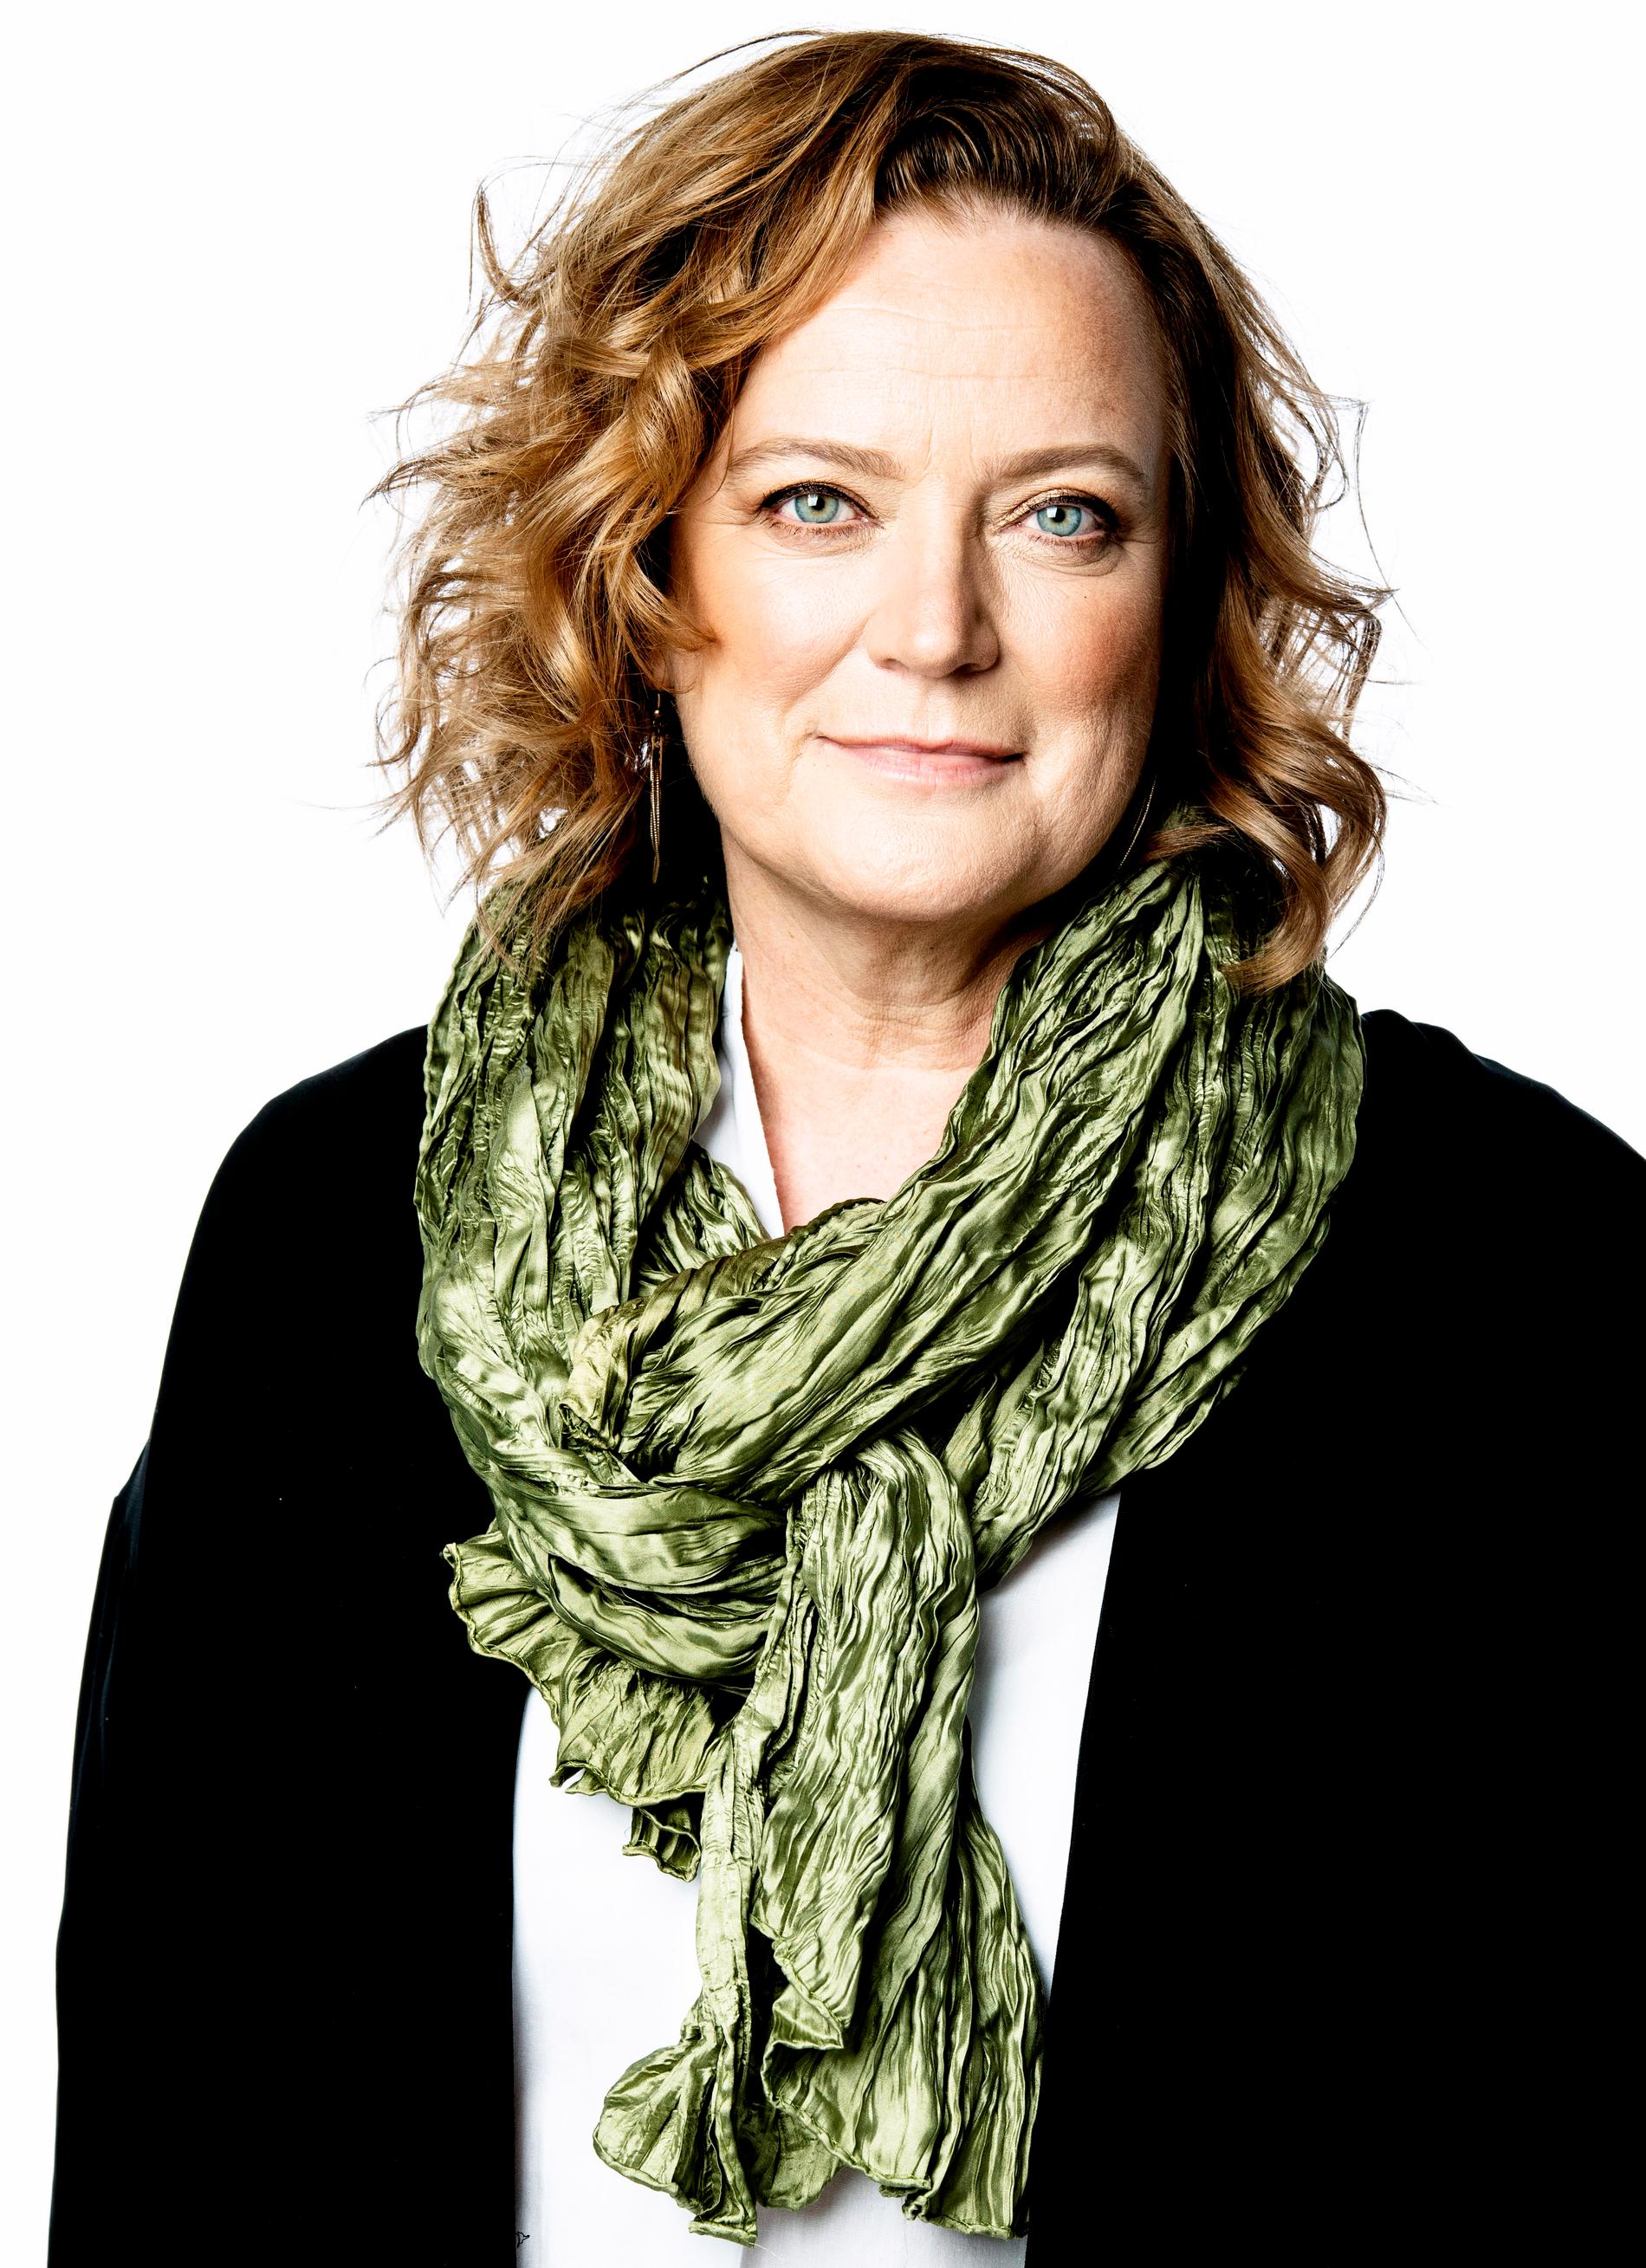 Aftonbladets publisher Lena K Samuelsson.